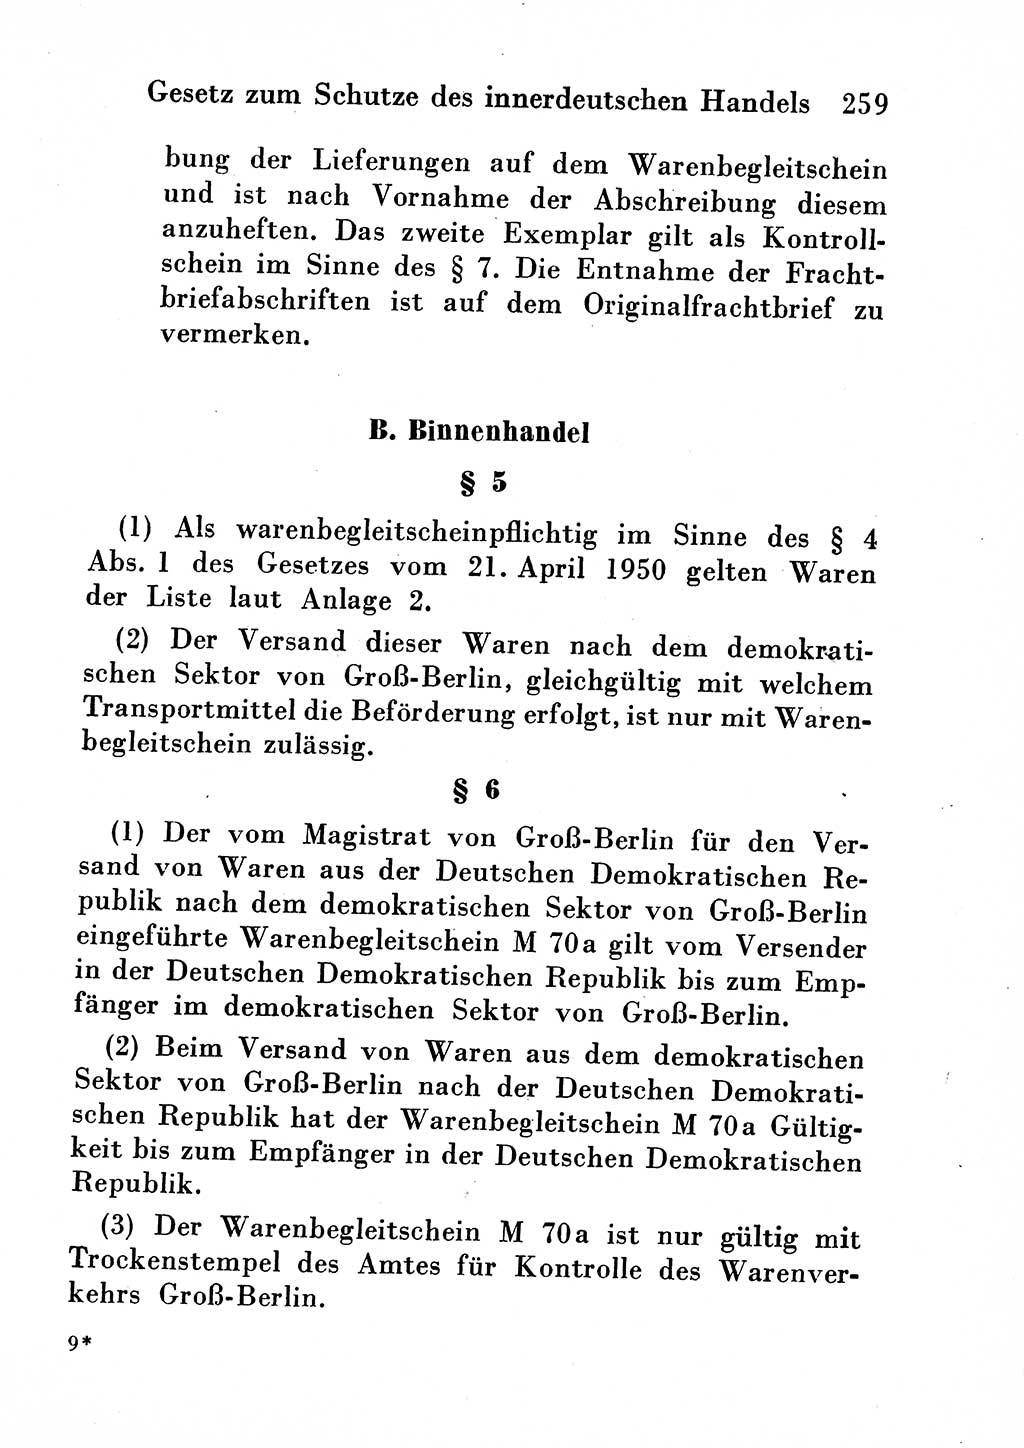 Strafgesetzbuch (StGB) und andere Strafgesetze [Deutsche Demokratische Republik (DDR)] 1954, Seite 259 (StGB Strafges. DDR 1954, S. 259)